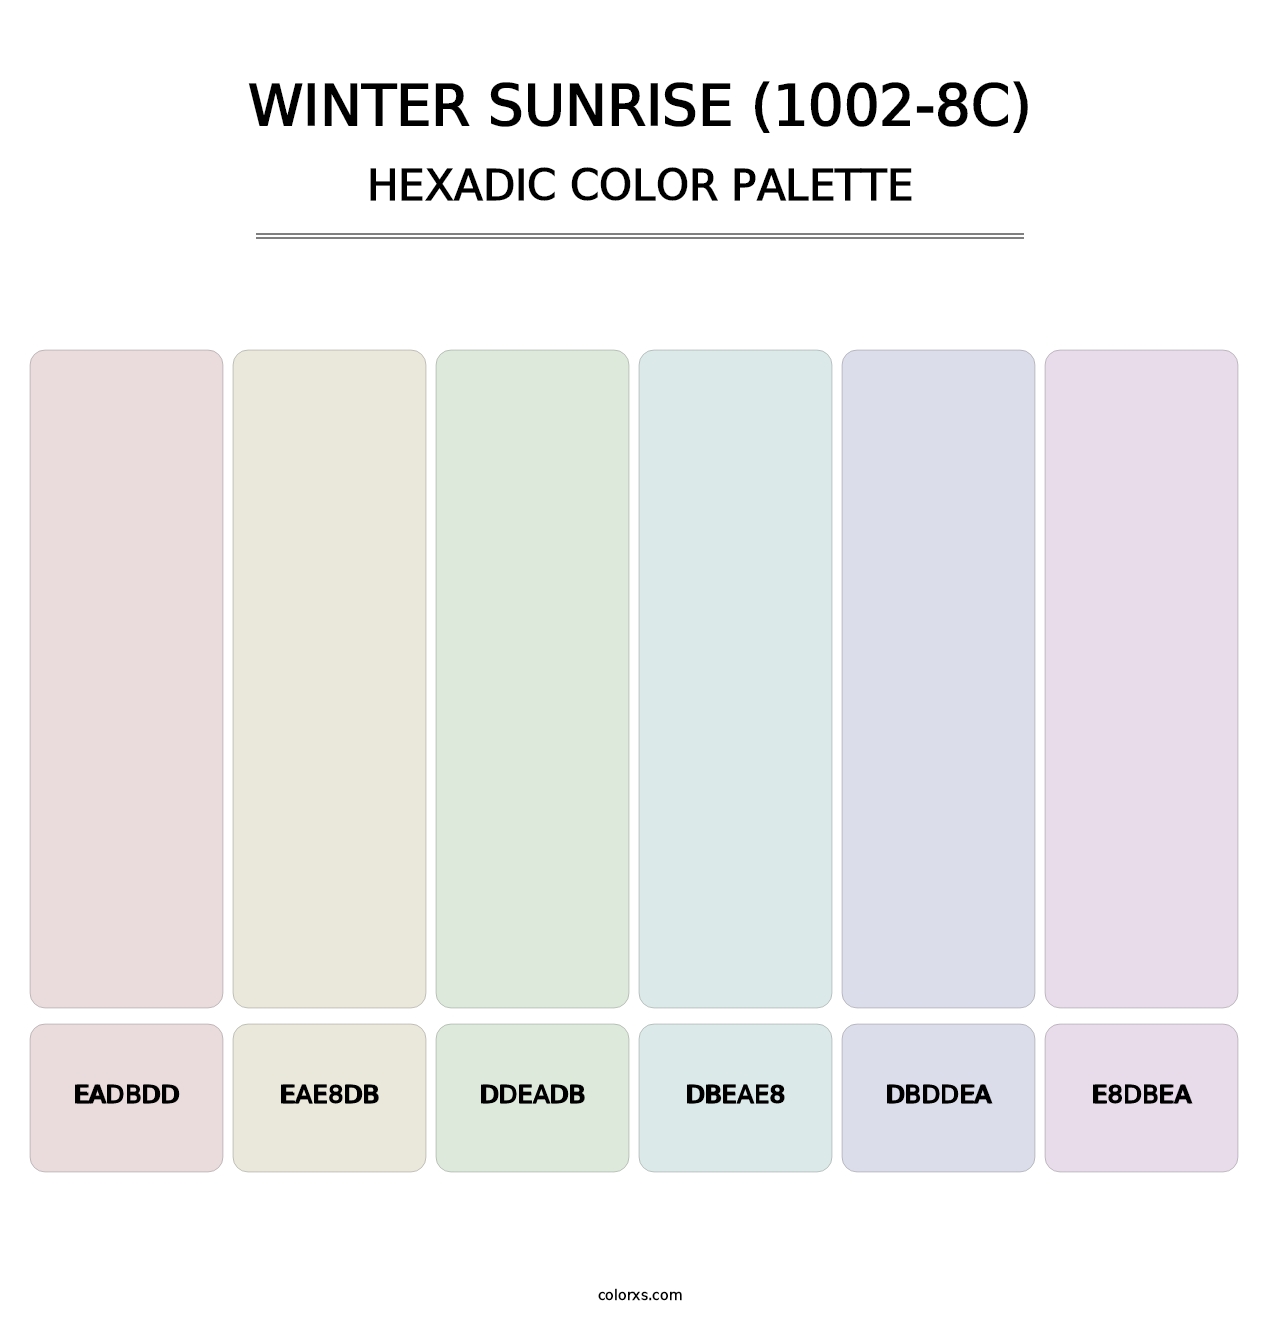 Winter Sunrise (1002-8C) - Hexadic Color Palette